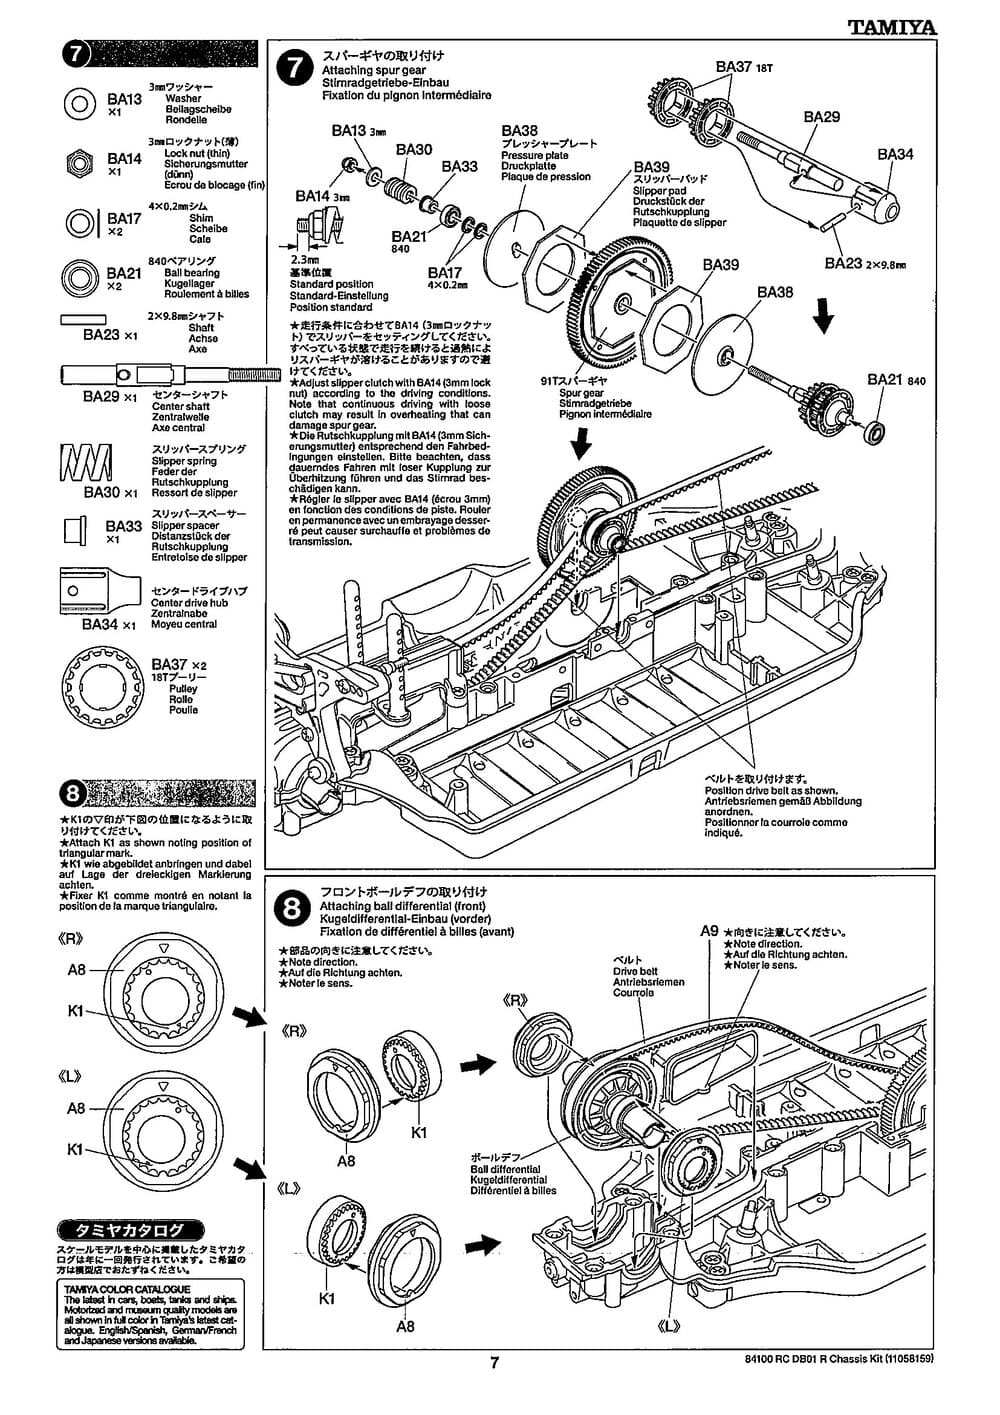 Tamiya - DB-01R Chassis - Manual - Page 7